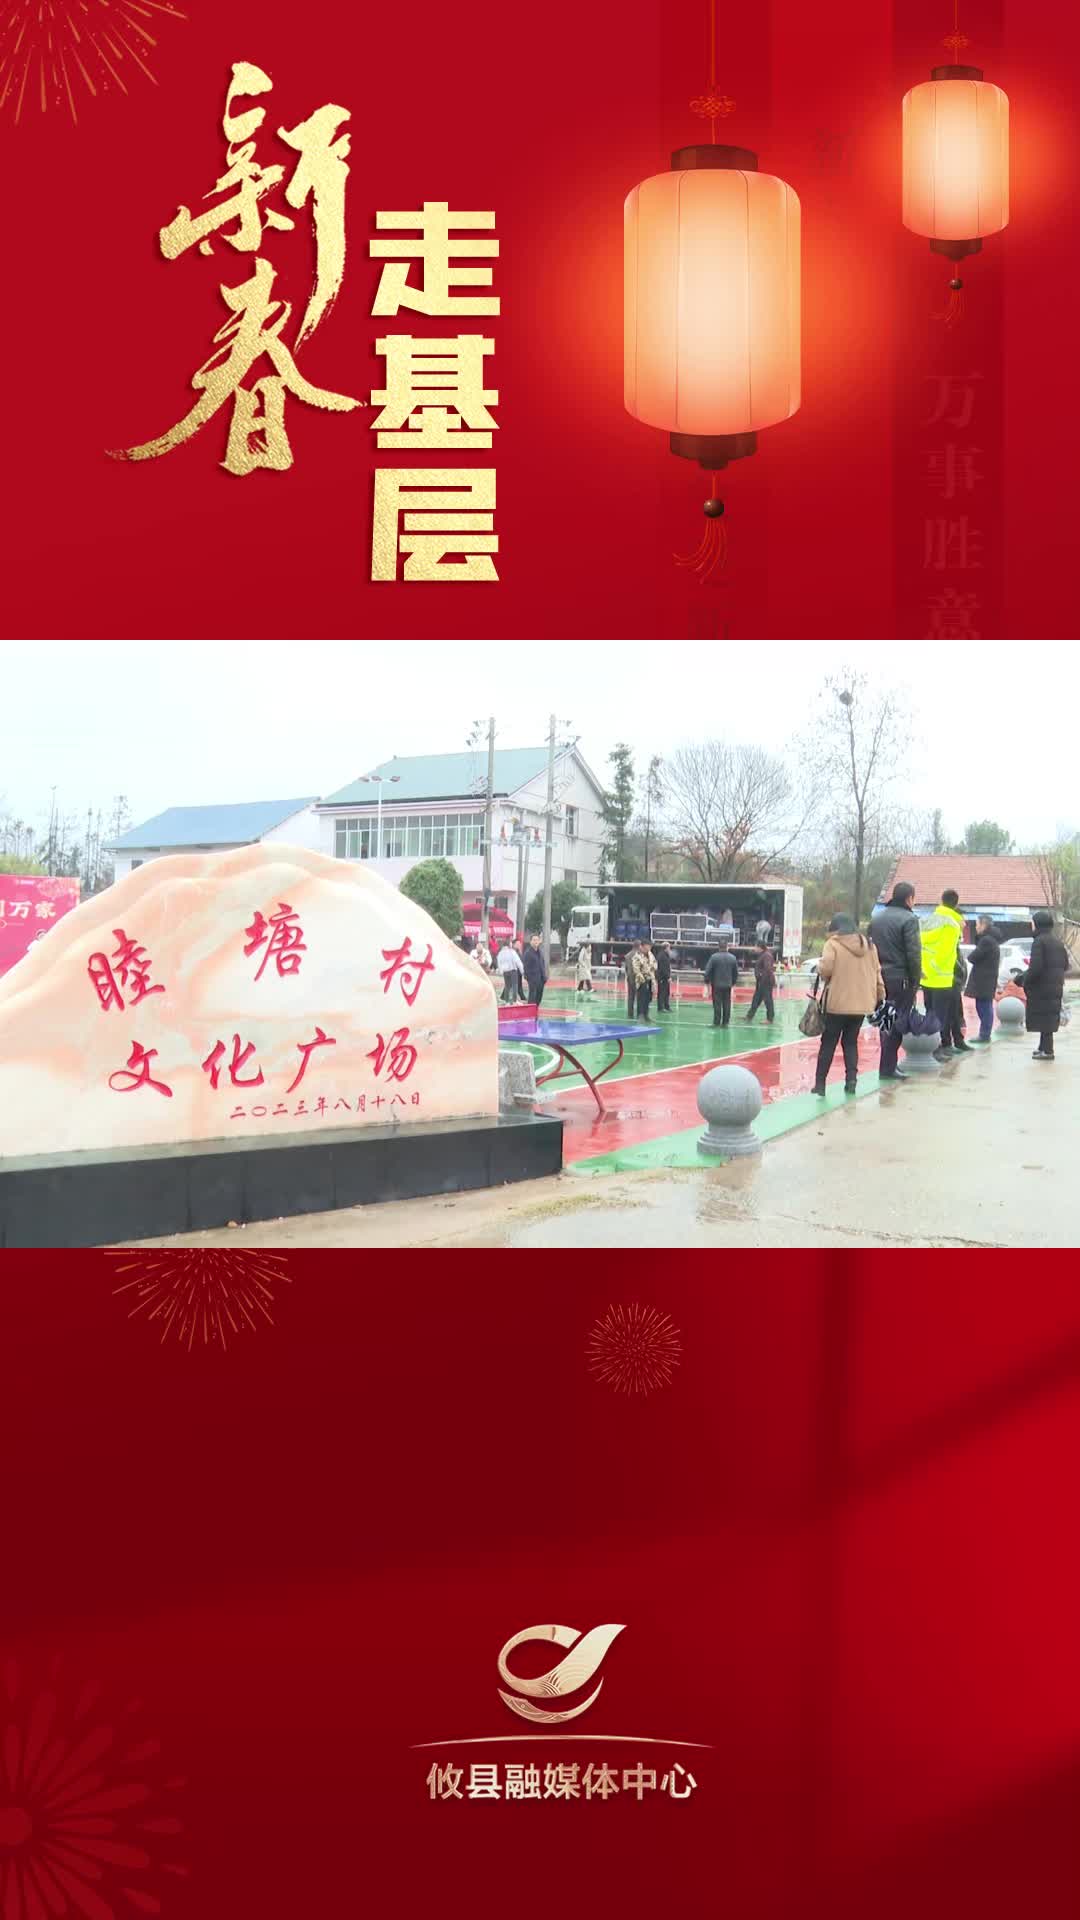 【新春走基层】“众望攸归 春到万家”春节群众文化活动桃水站精彩不断